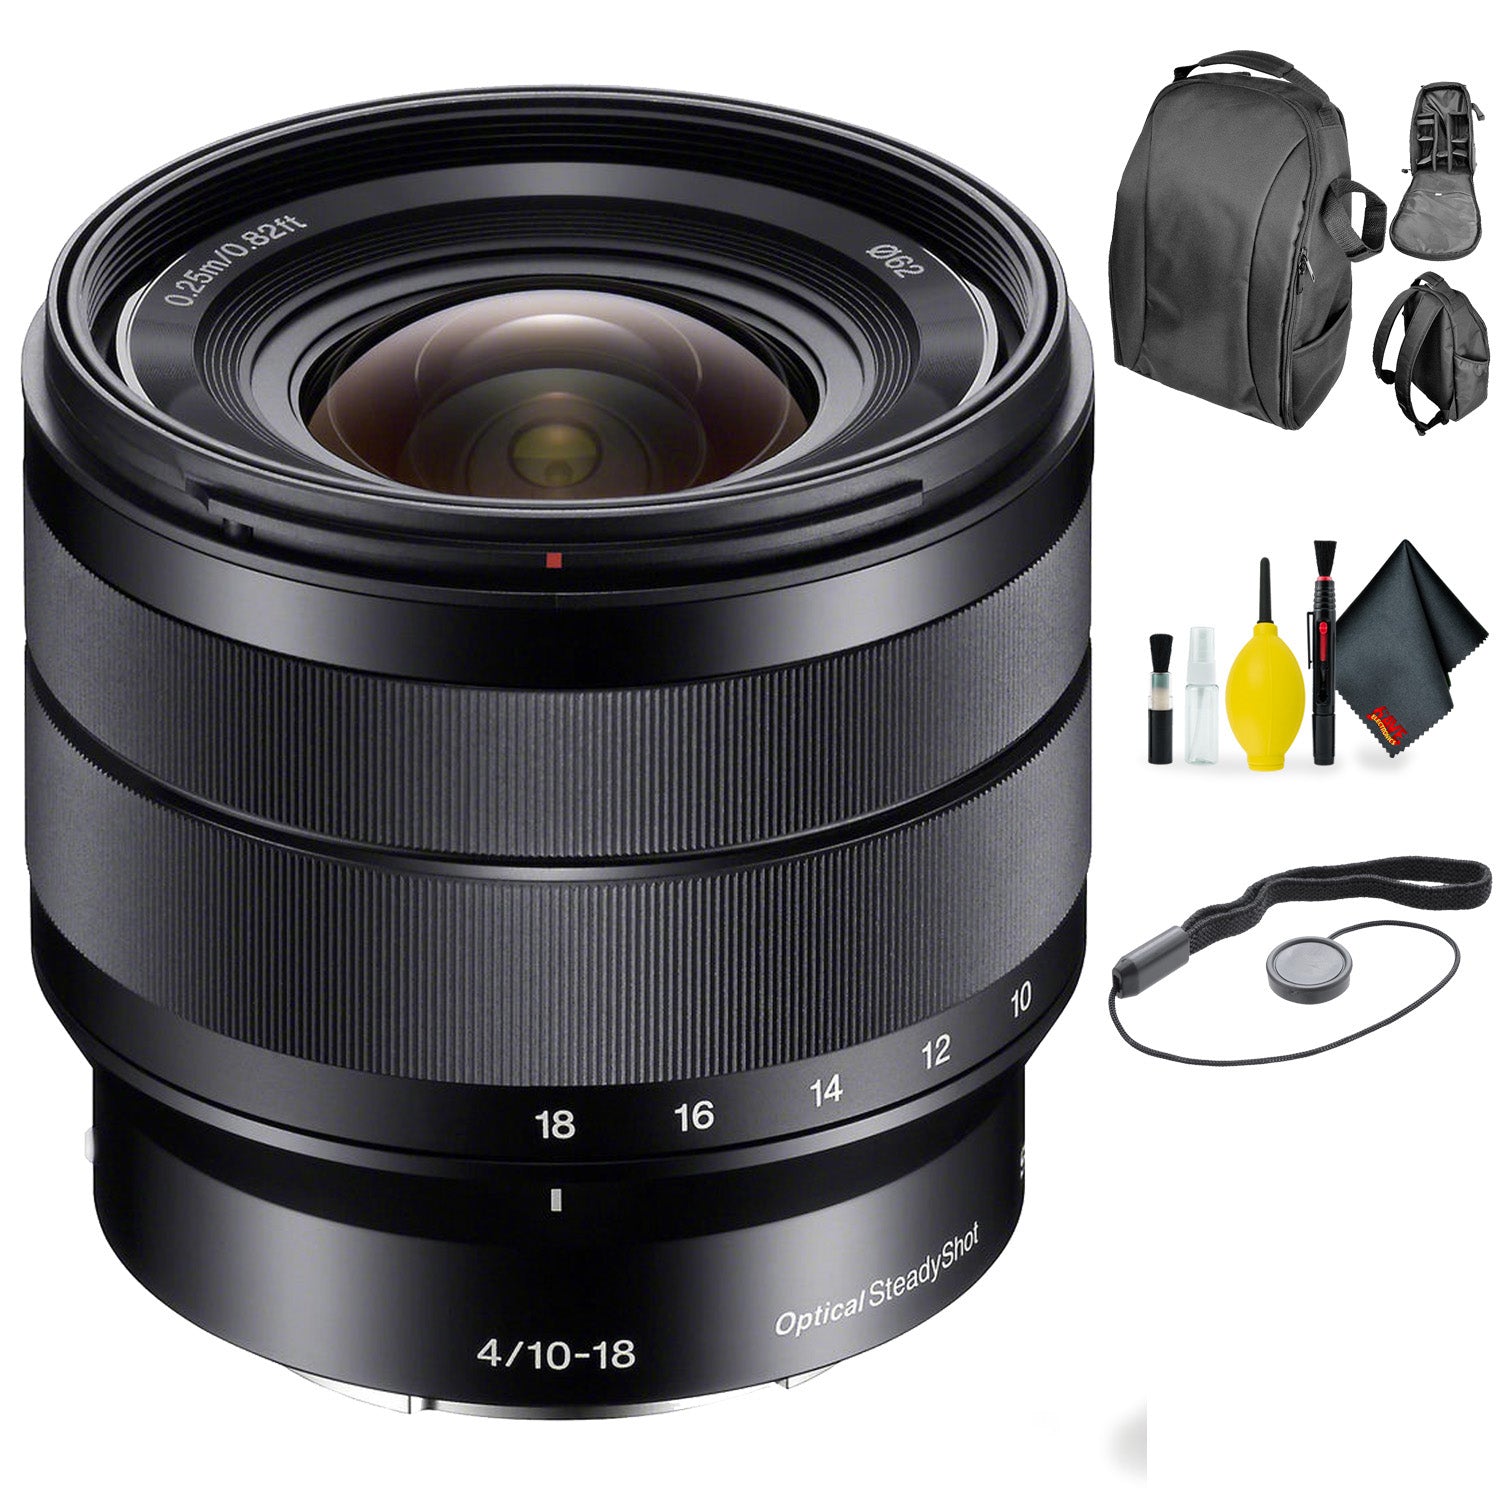 SONY 10-18MM F4 OSS E Lens SEL1018 + Deluxe Lens Cleaning Kit